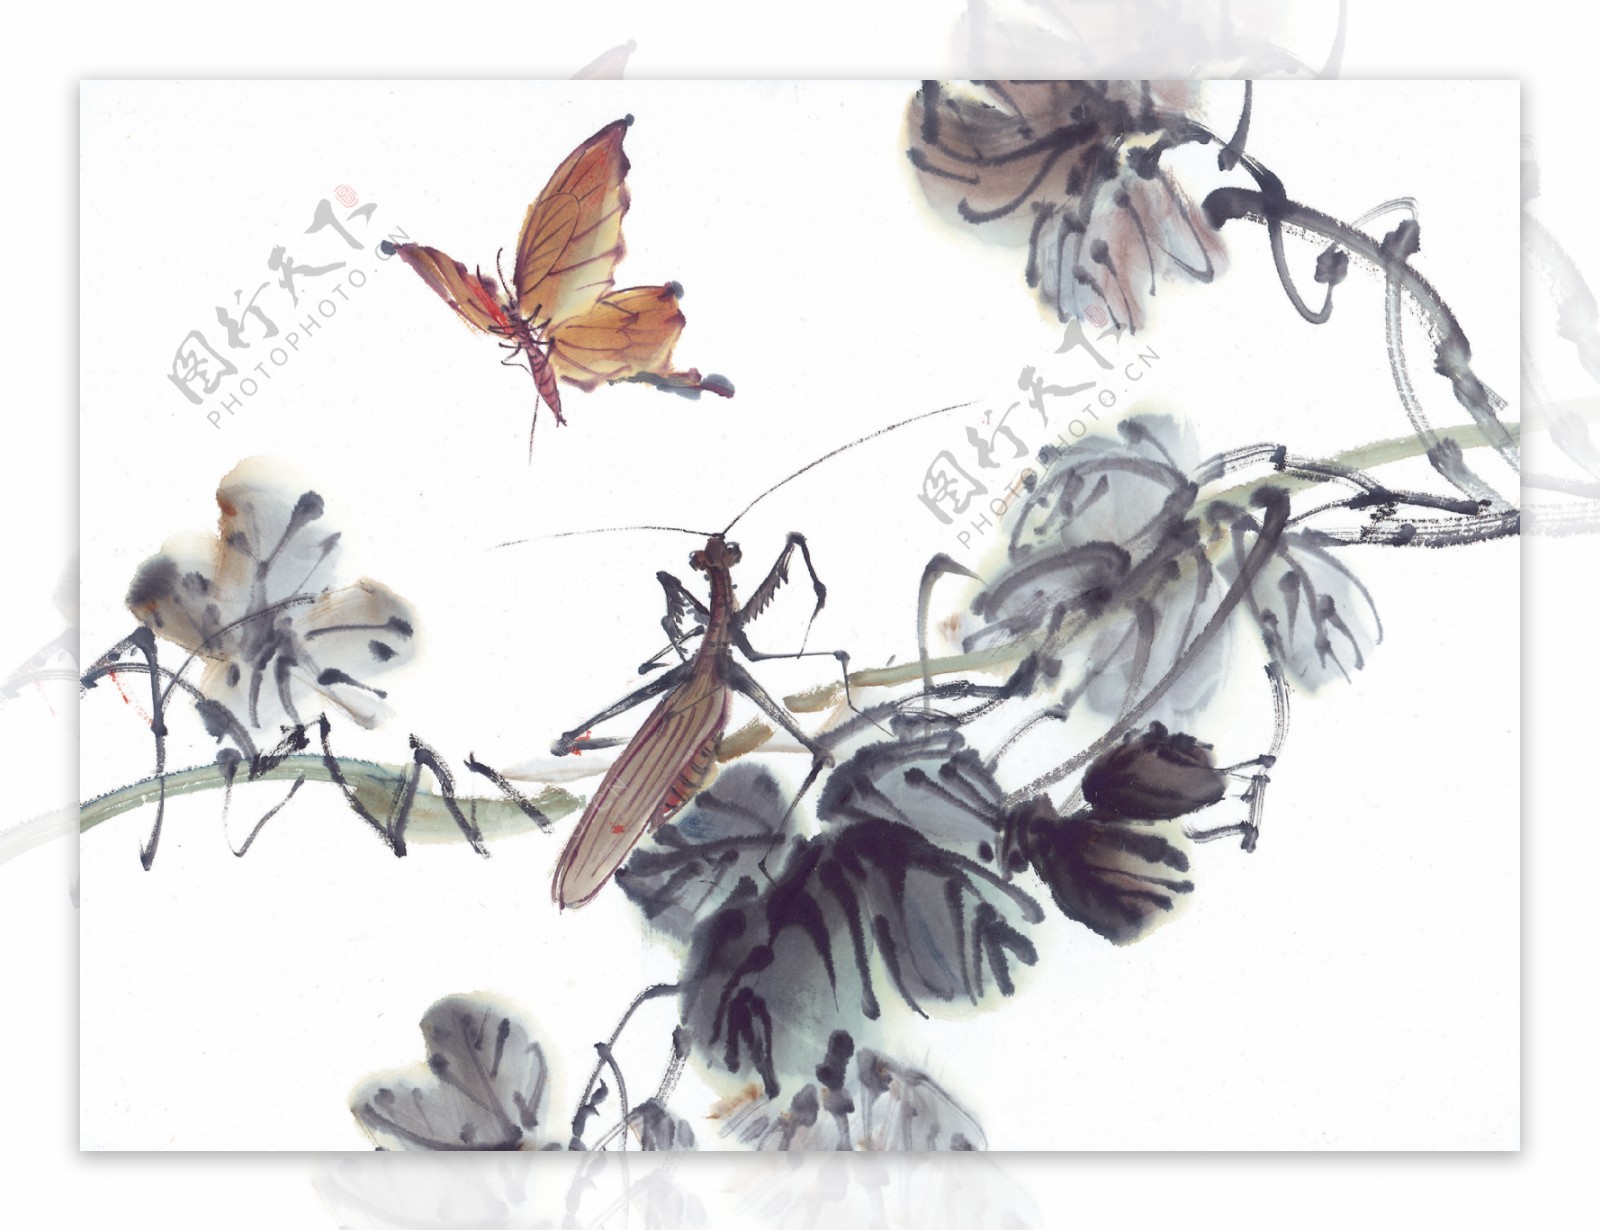 树枝花瓣水墨画昆虫蚂蚱蛐蛐知了蝗虫中华艺术绘画